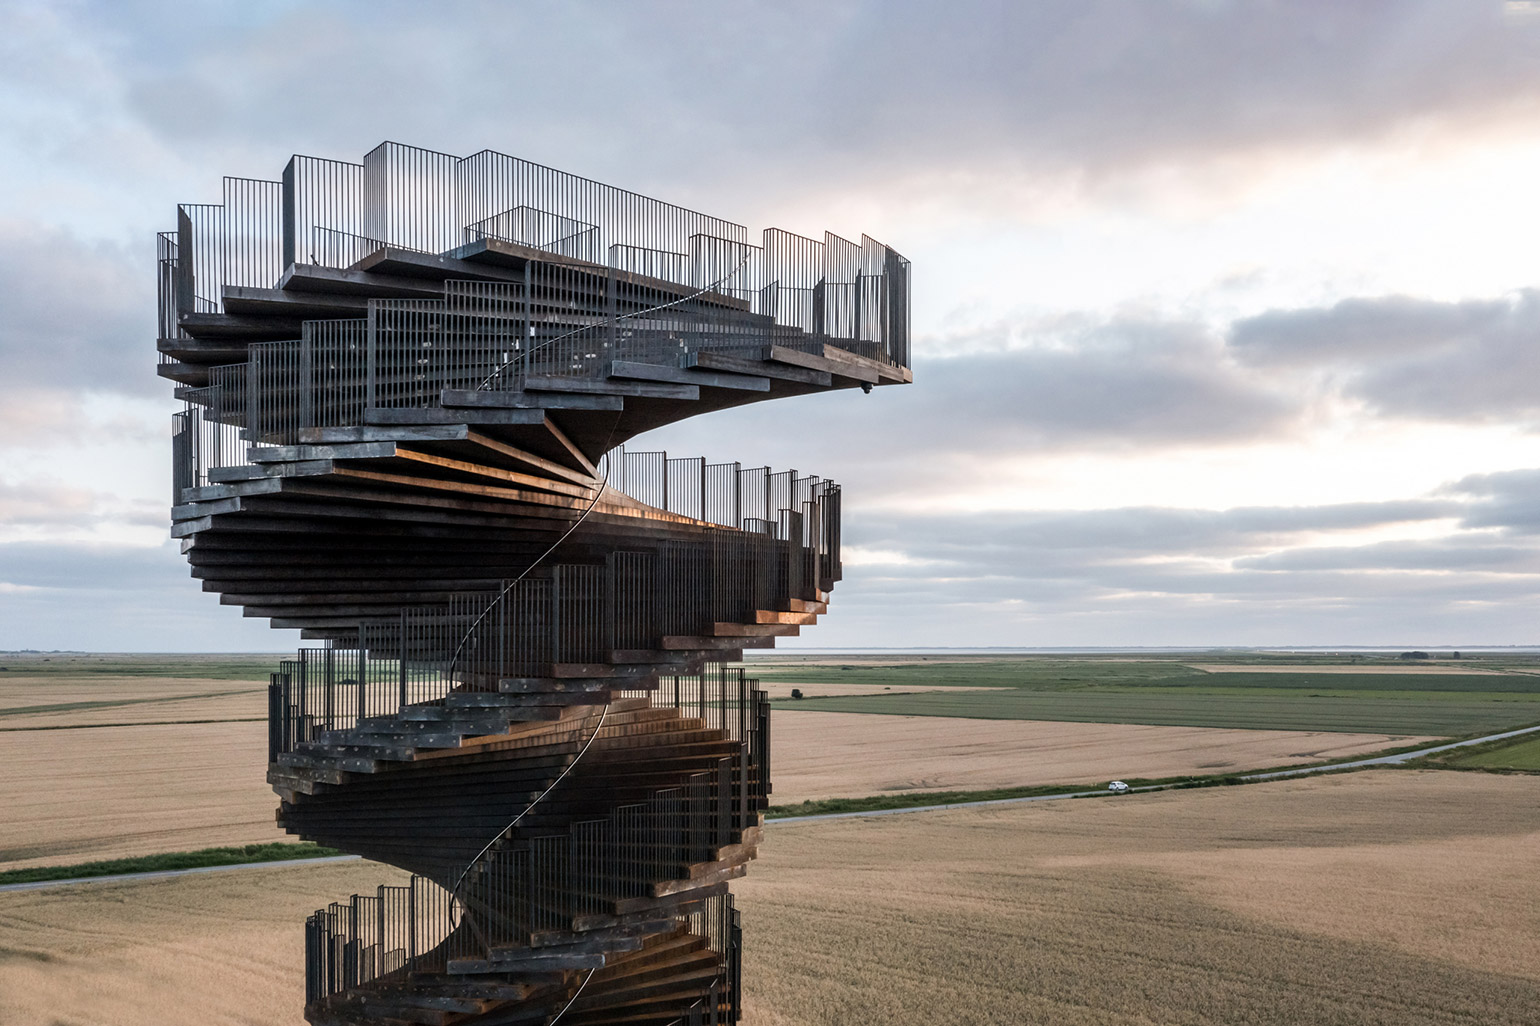 Marsk Observation Tower Designed by BIG Opens in Denmark